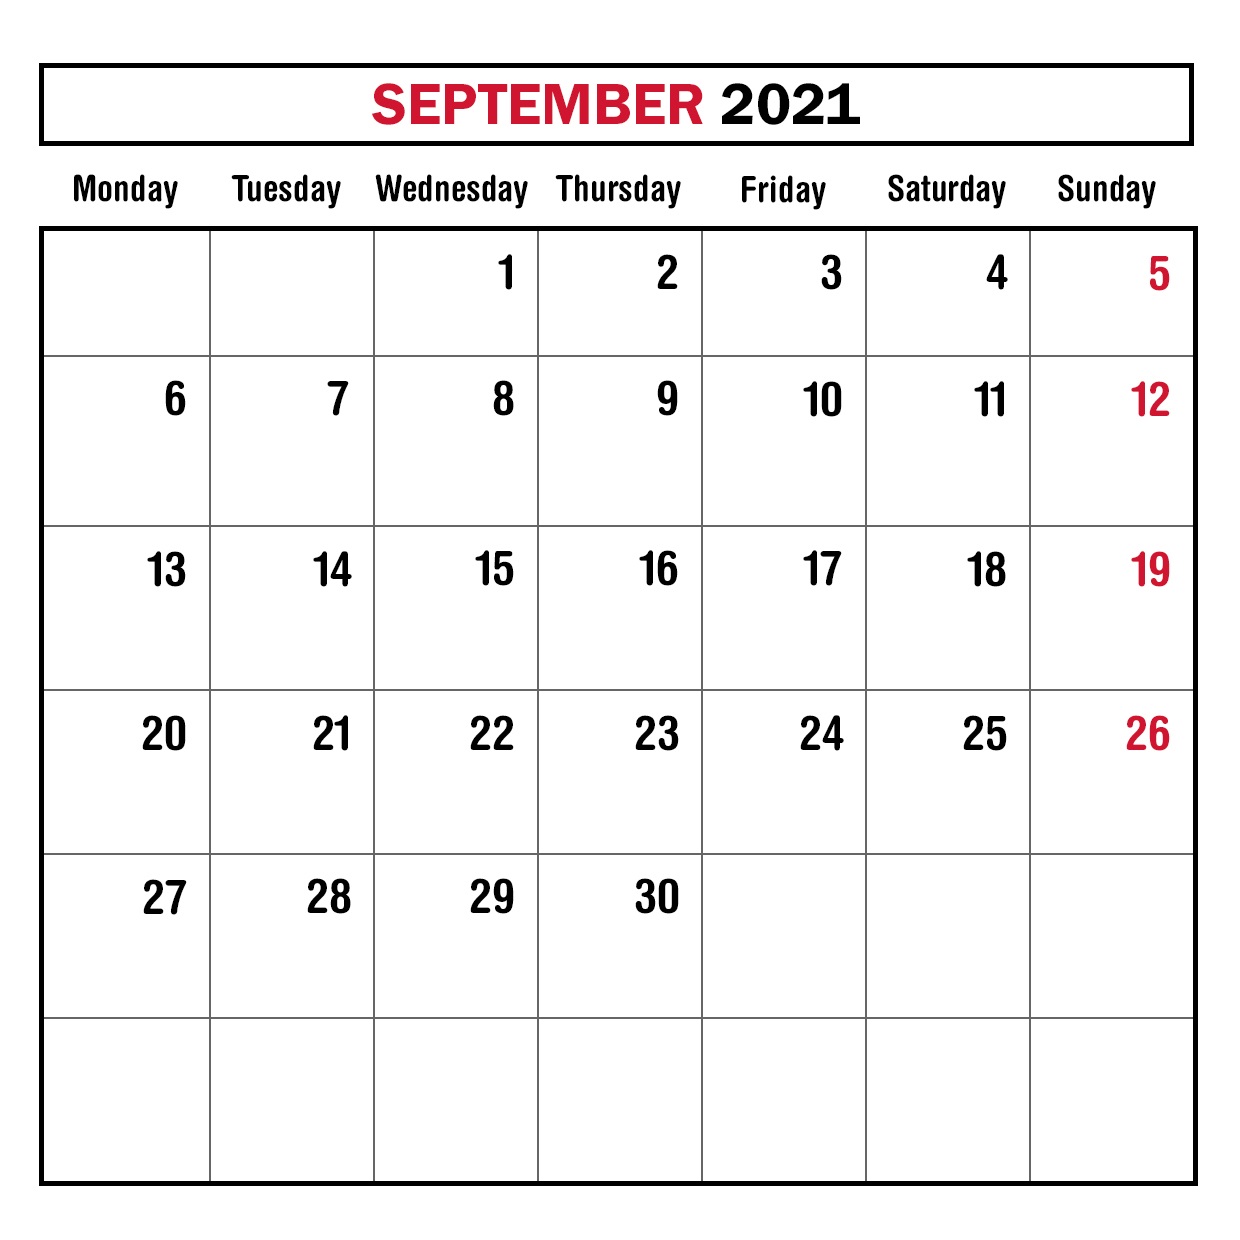 September 2021 Calendar Template for Google Sheets